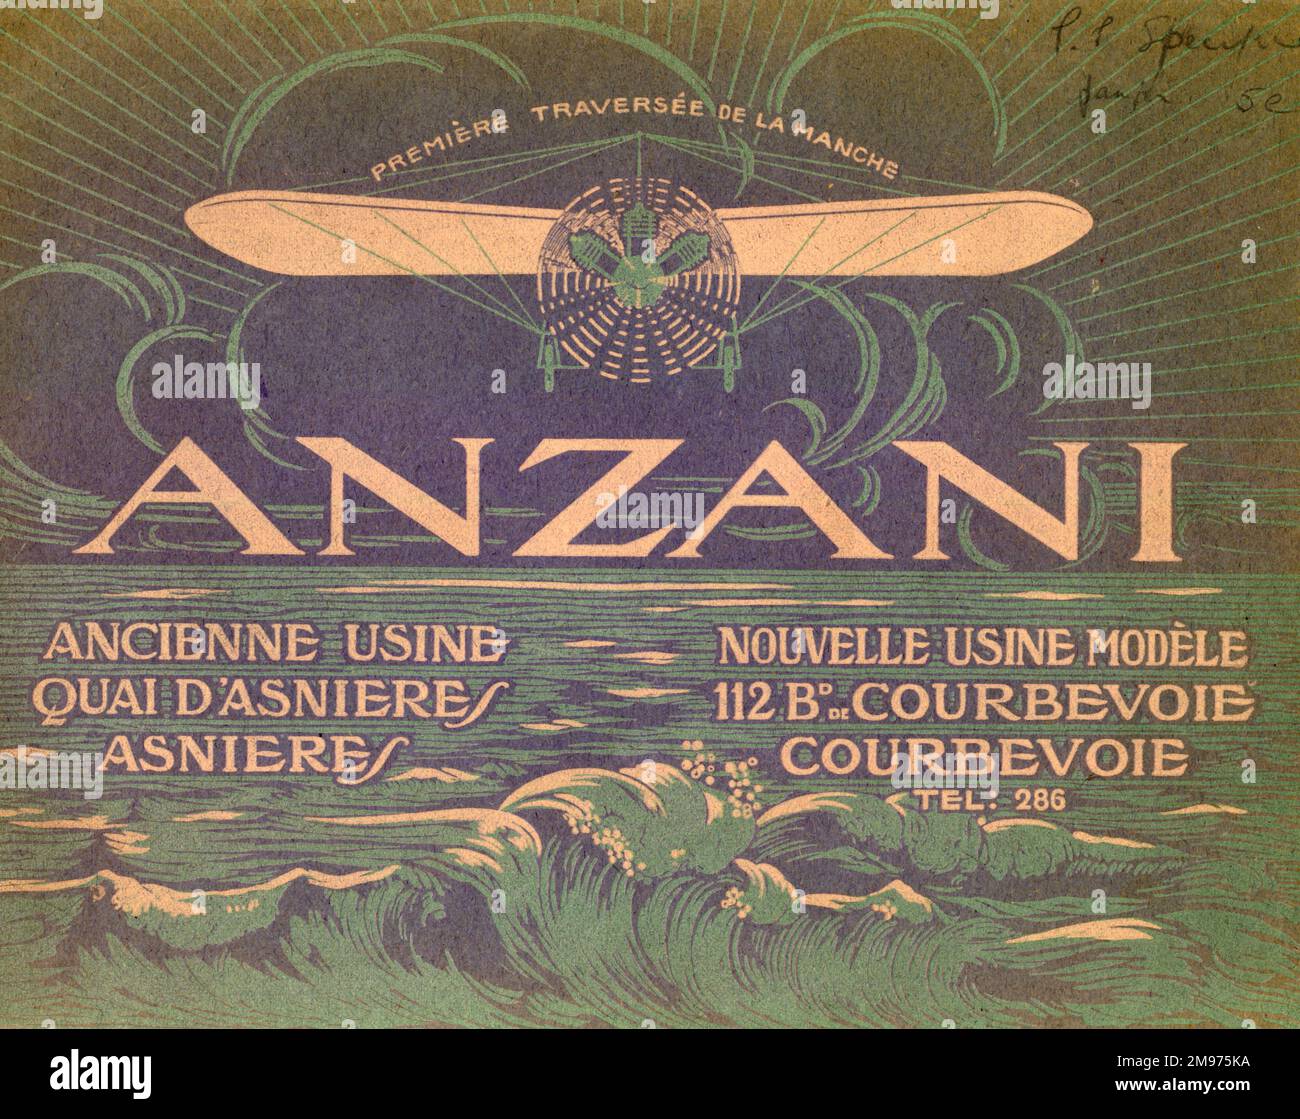 Couverture de brochure Anzani. vers 1911. Banque D'Images